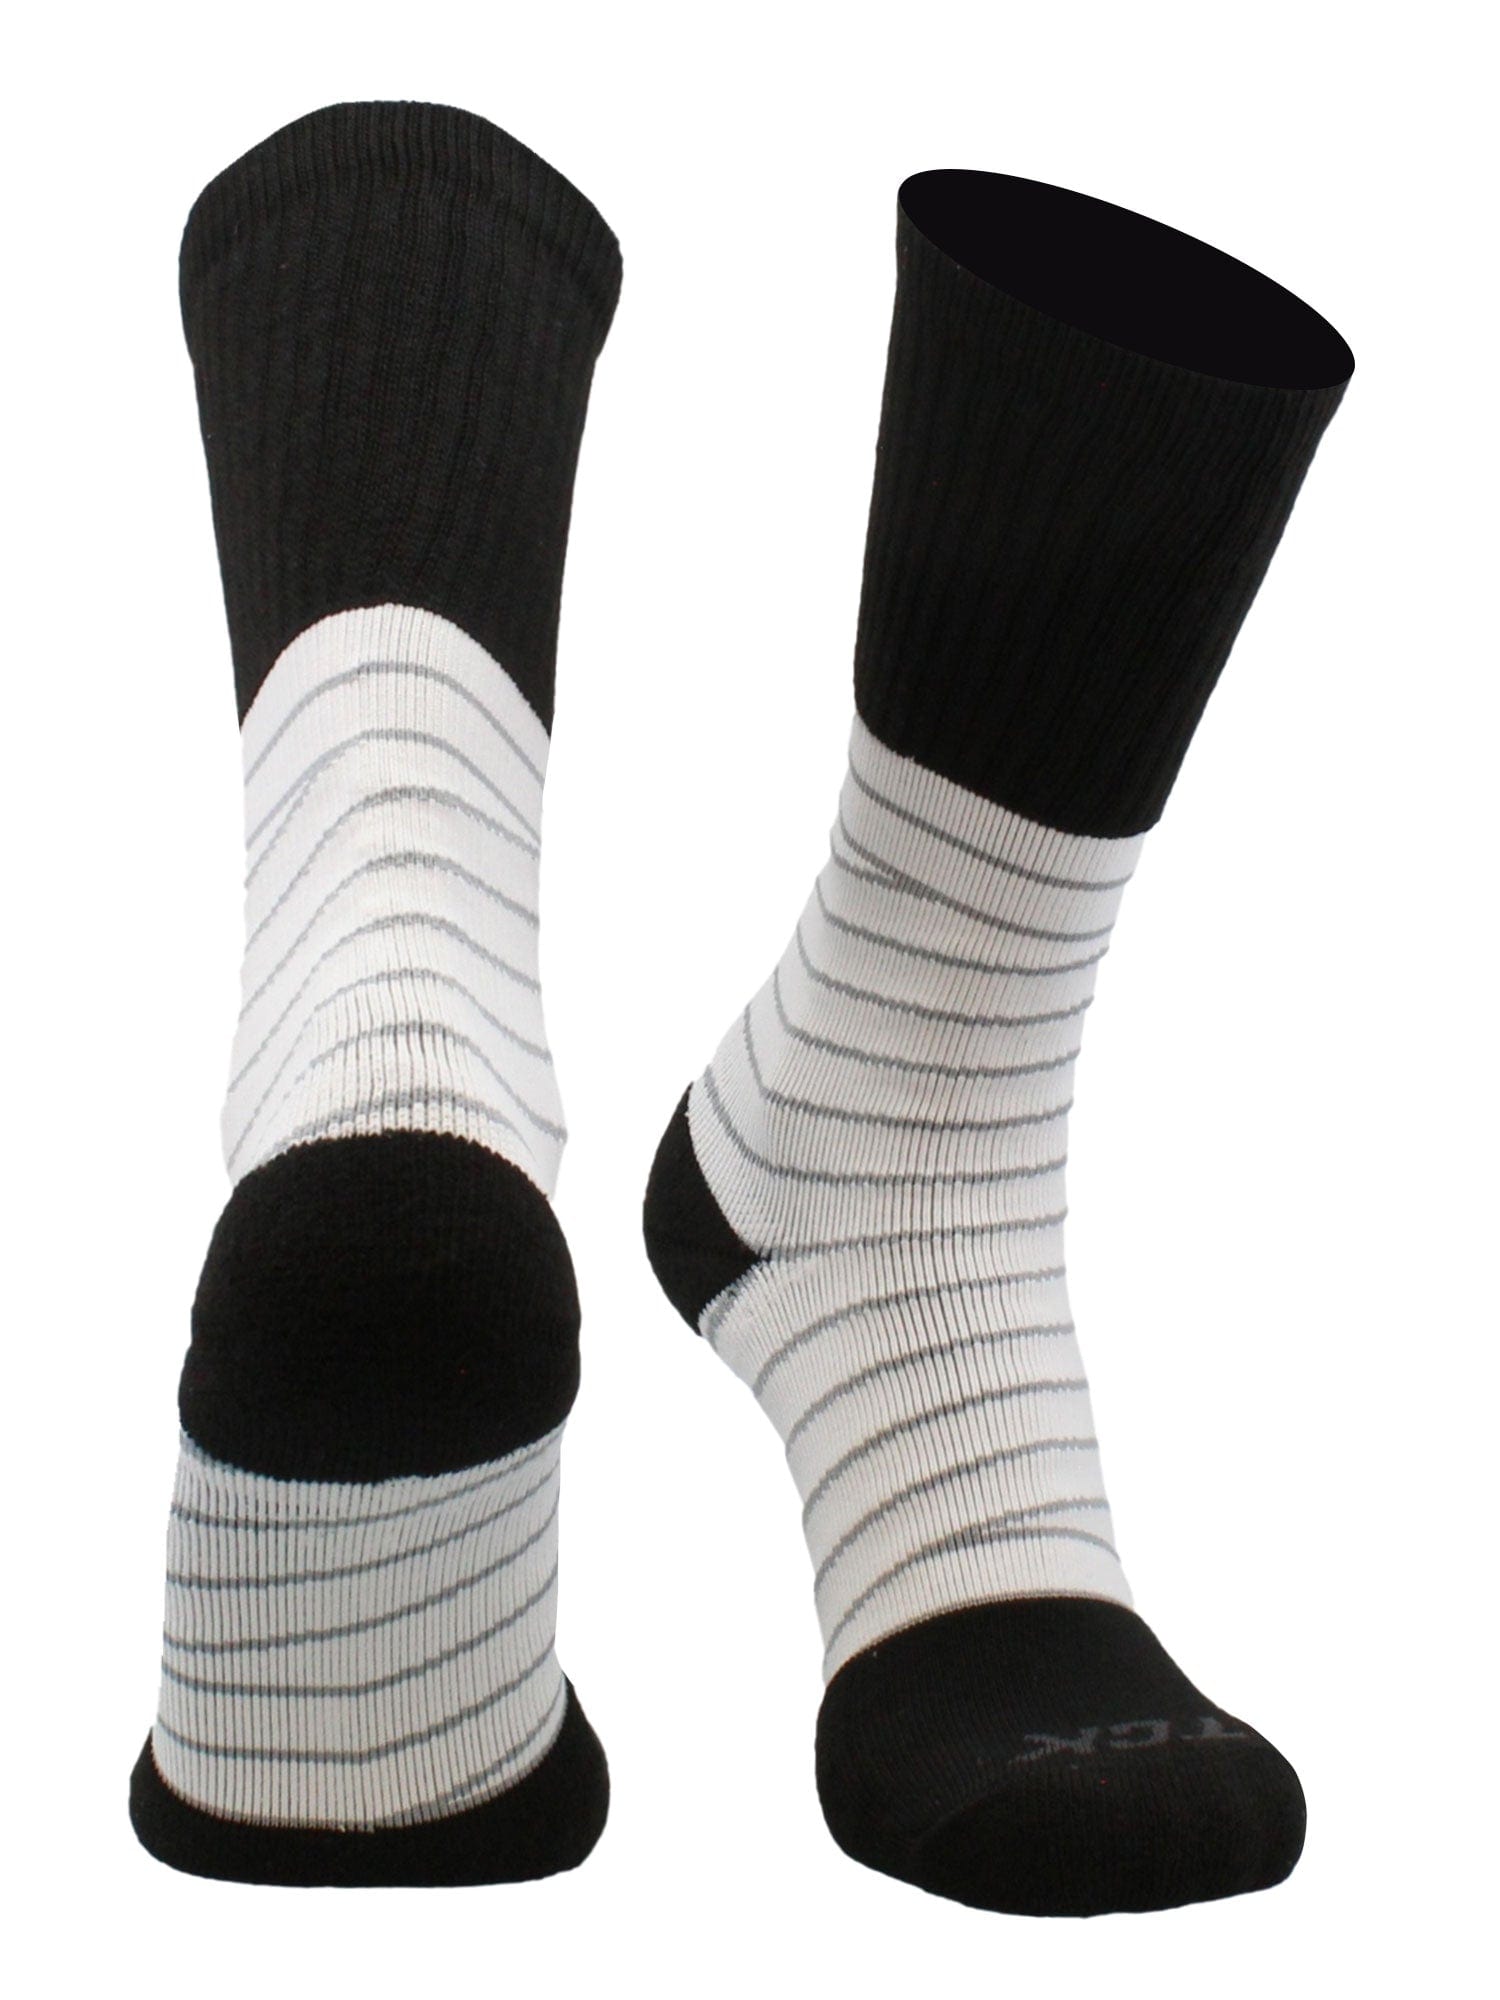 https://tcksports.com/cdn/shop/files/tck-socks-ankle-support-tape-socks-for-football-basketball-volleyball-39746127954135_1500x.jpg?v=1701476424